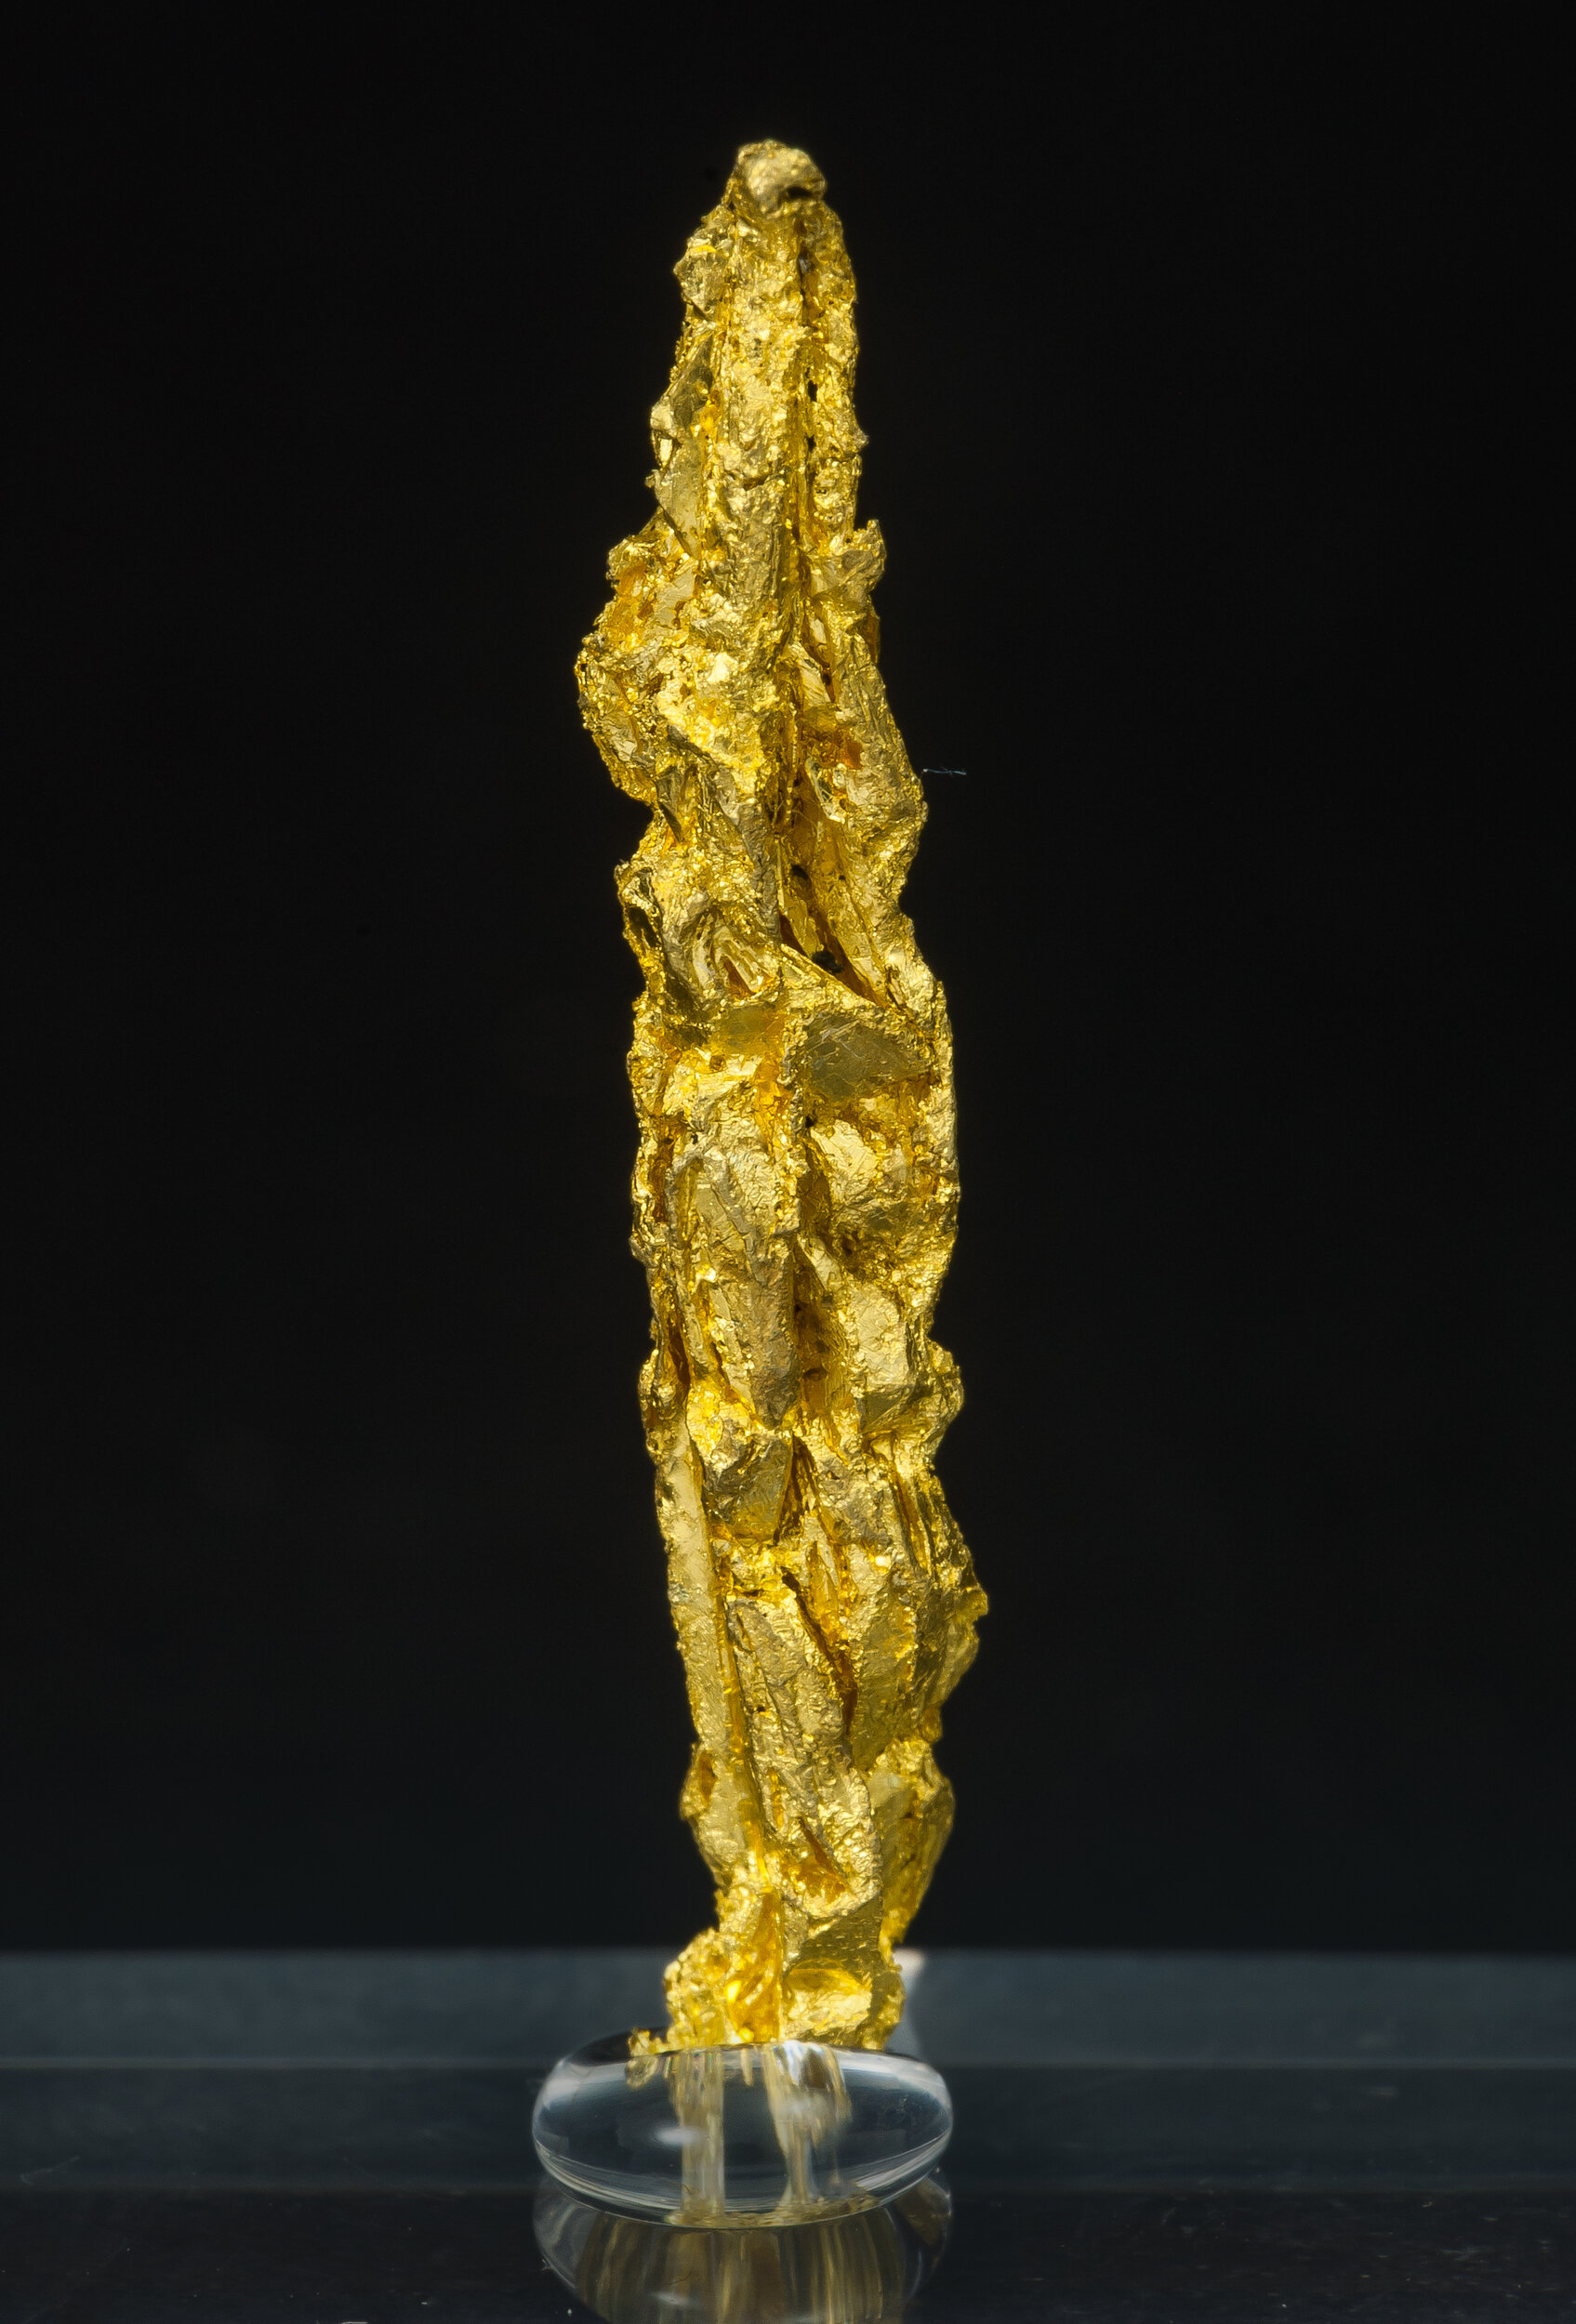 specimens/s_imagesAO7/Gold-ETM93AO7r.jpg